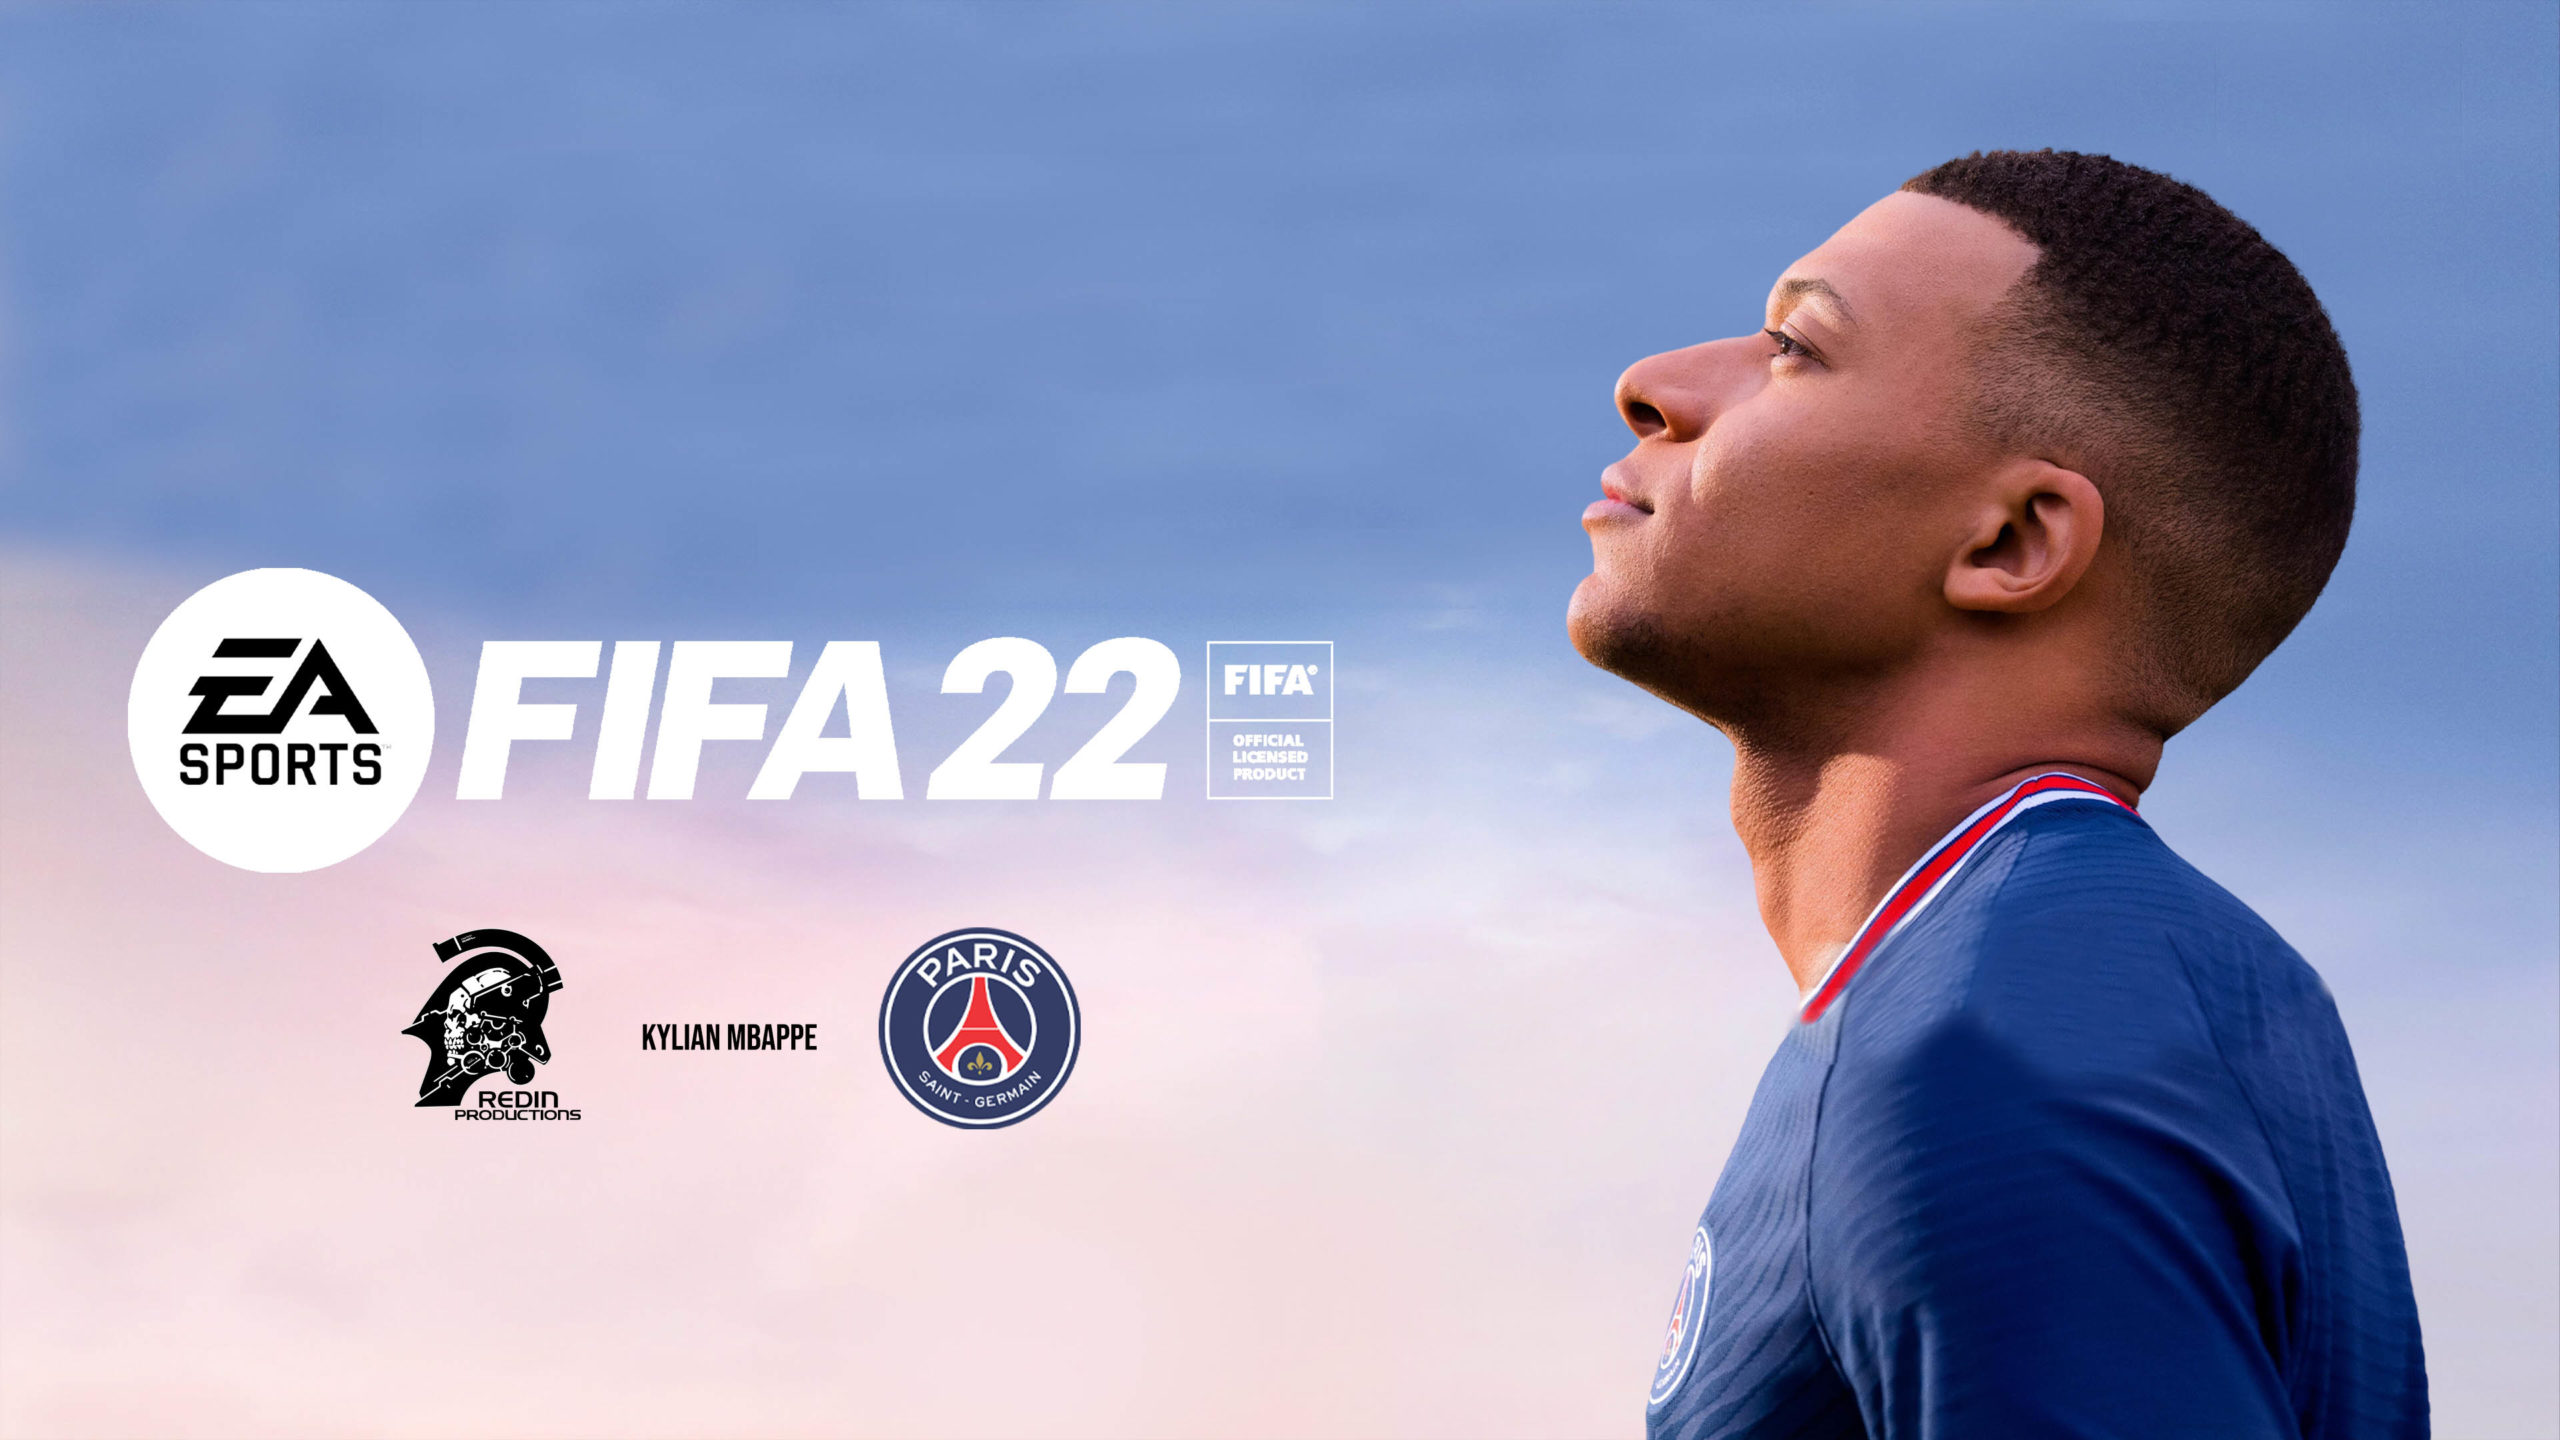 Speicherort der FIFA 22-Datei unter Windows 10